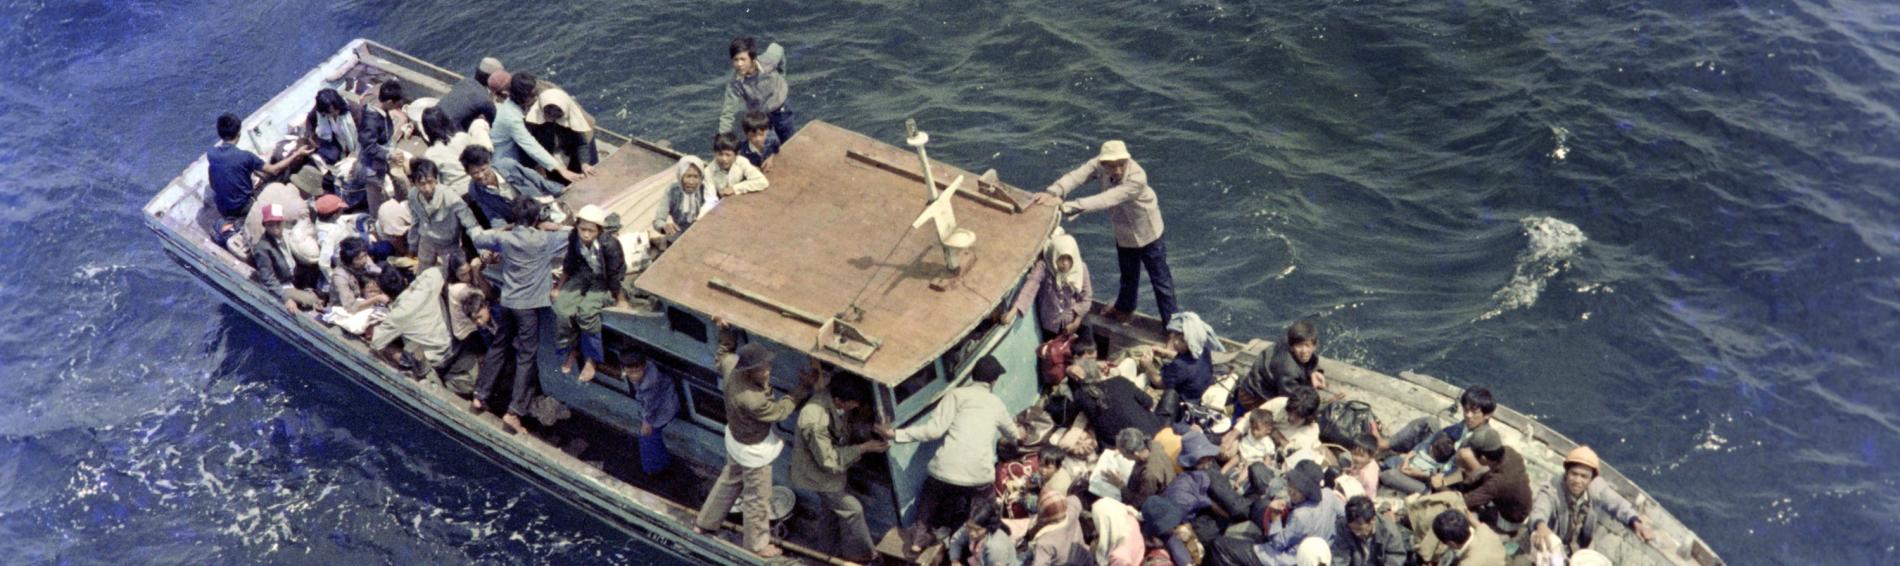 Een boot vol Vietnamese vluchtelingen op zee.